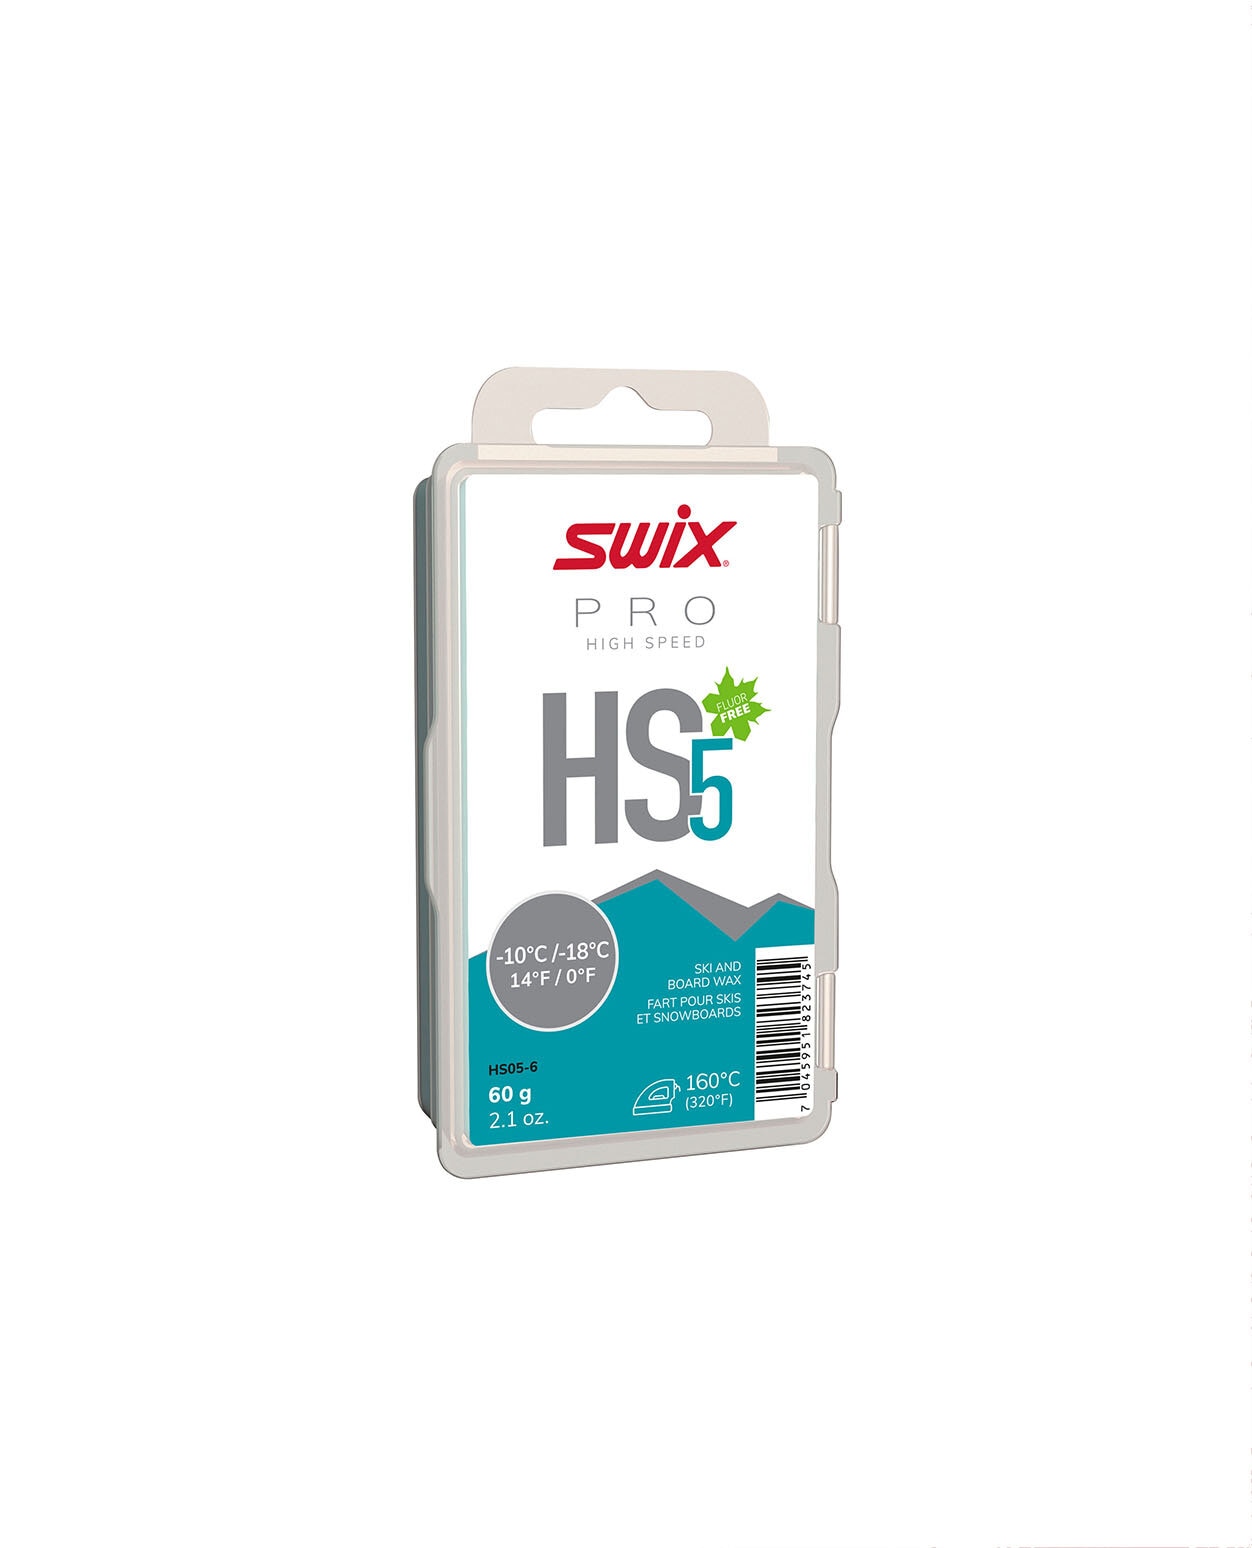 Swix HS5 Turquoise, -10°C/-18°C 60g